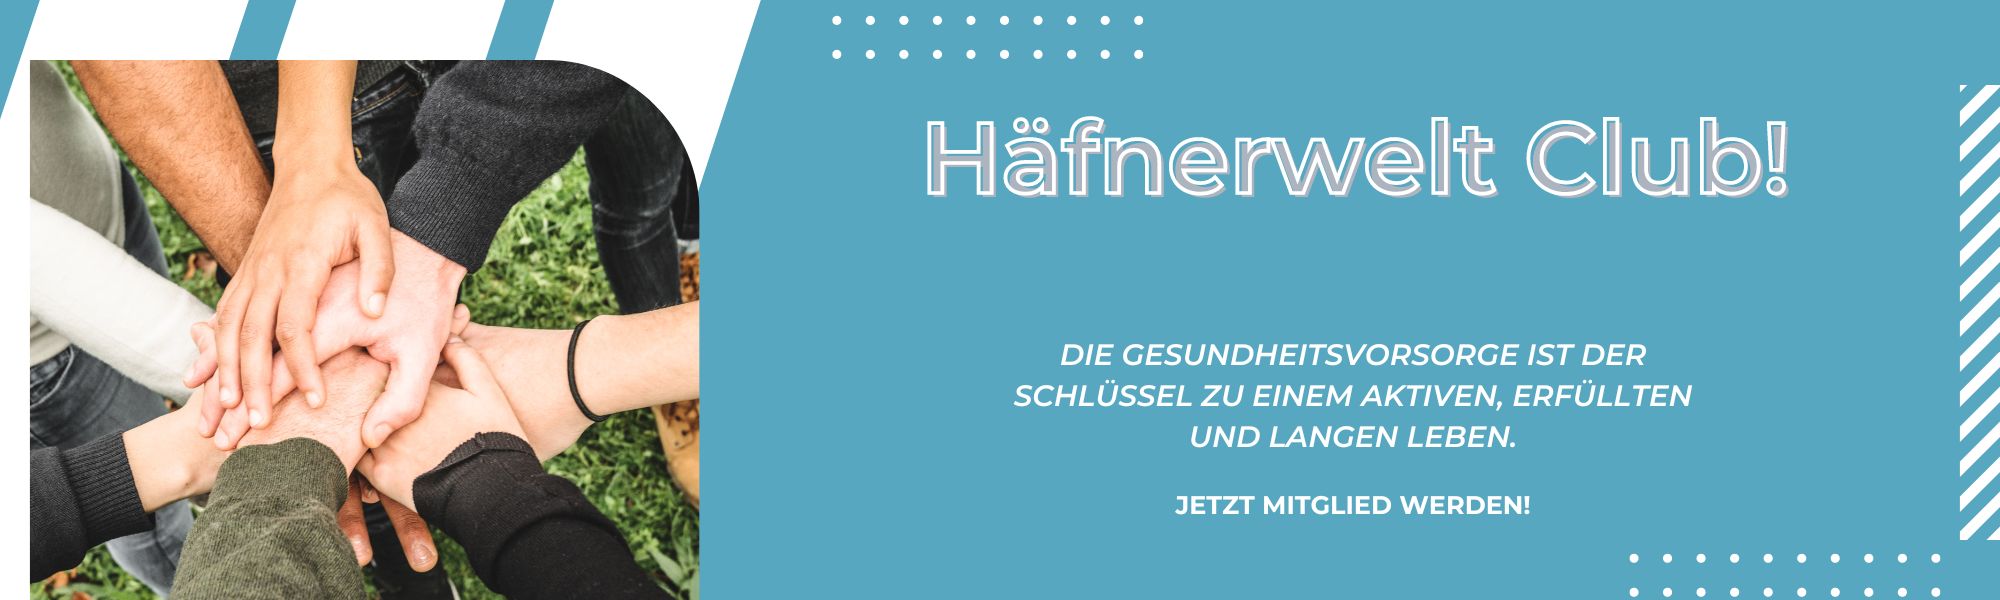 Banner Häfnerwelt Club